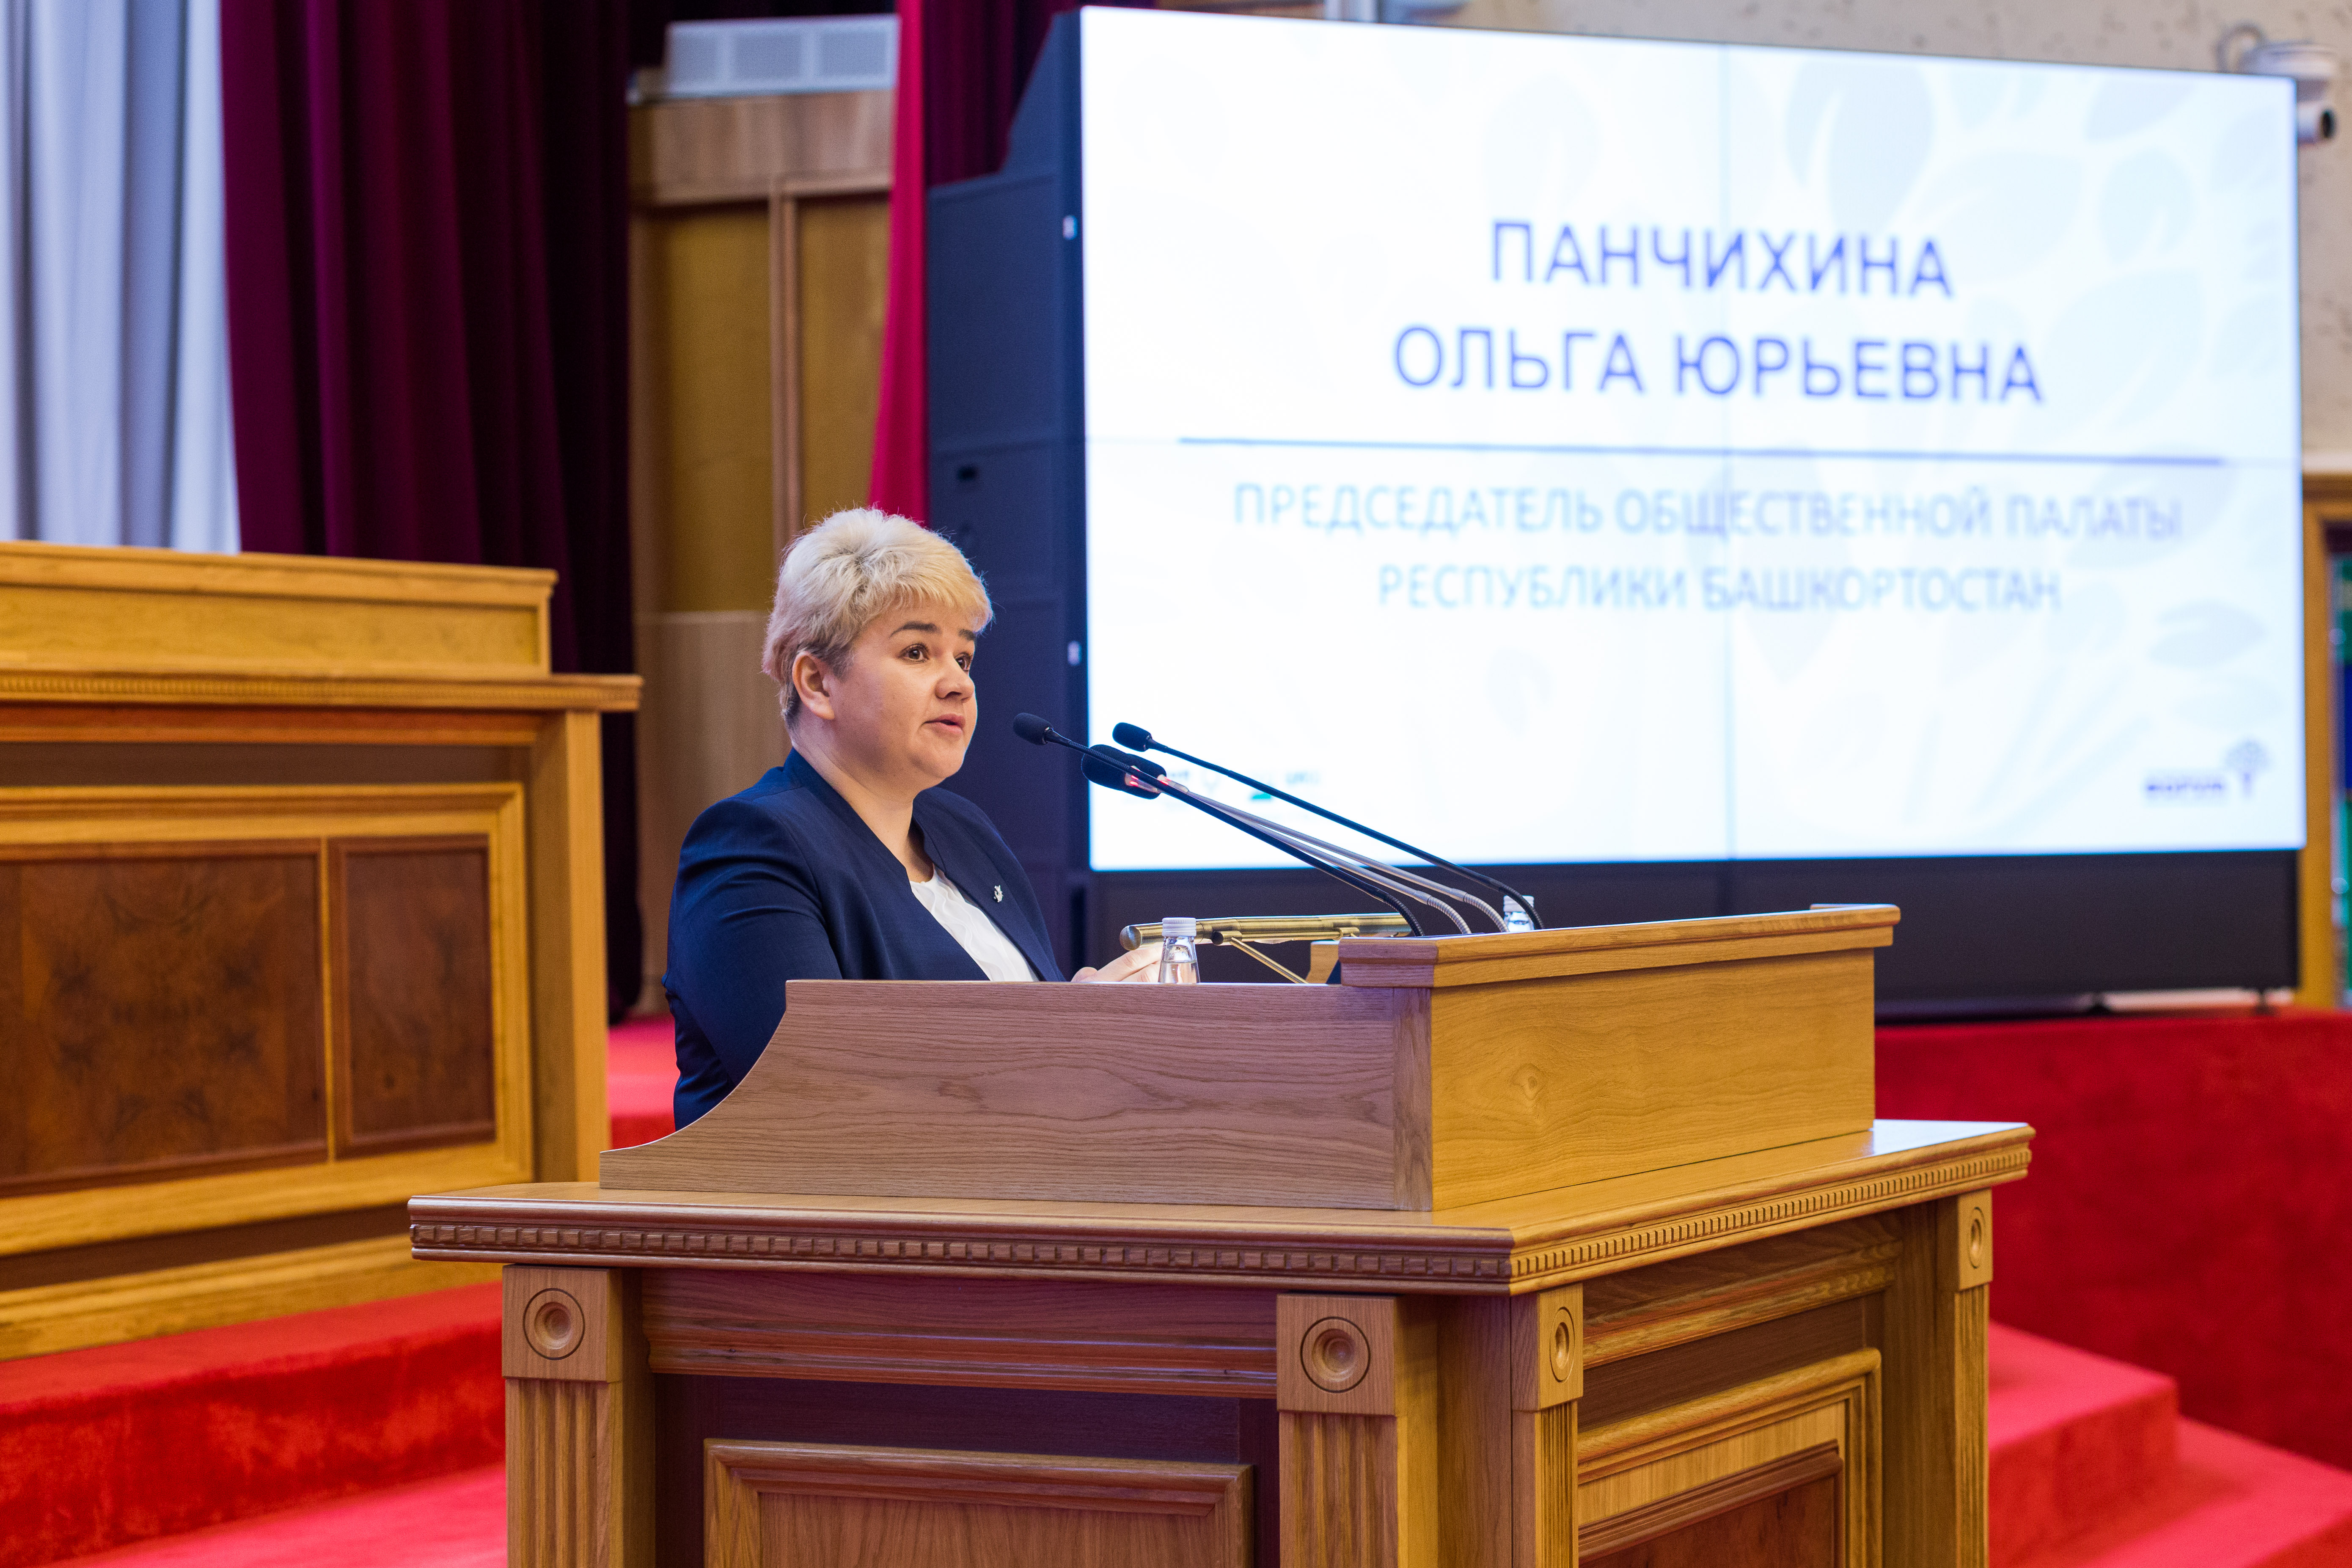 Общественная палата РБ назвала важные тезисы социального блока Послания президента РФ